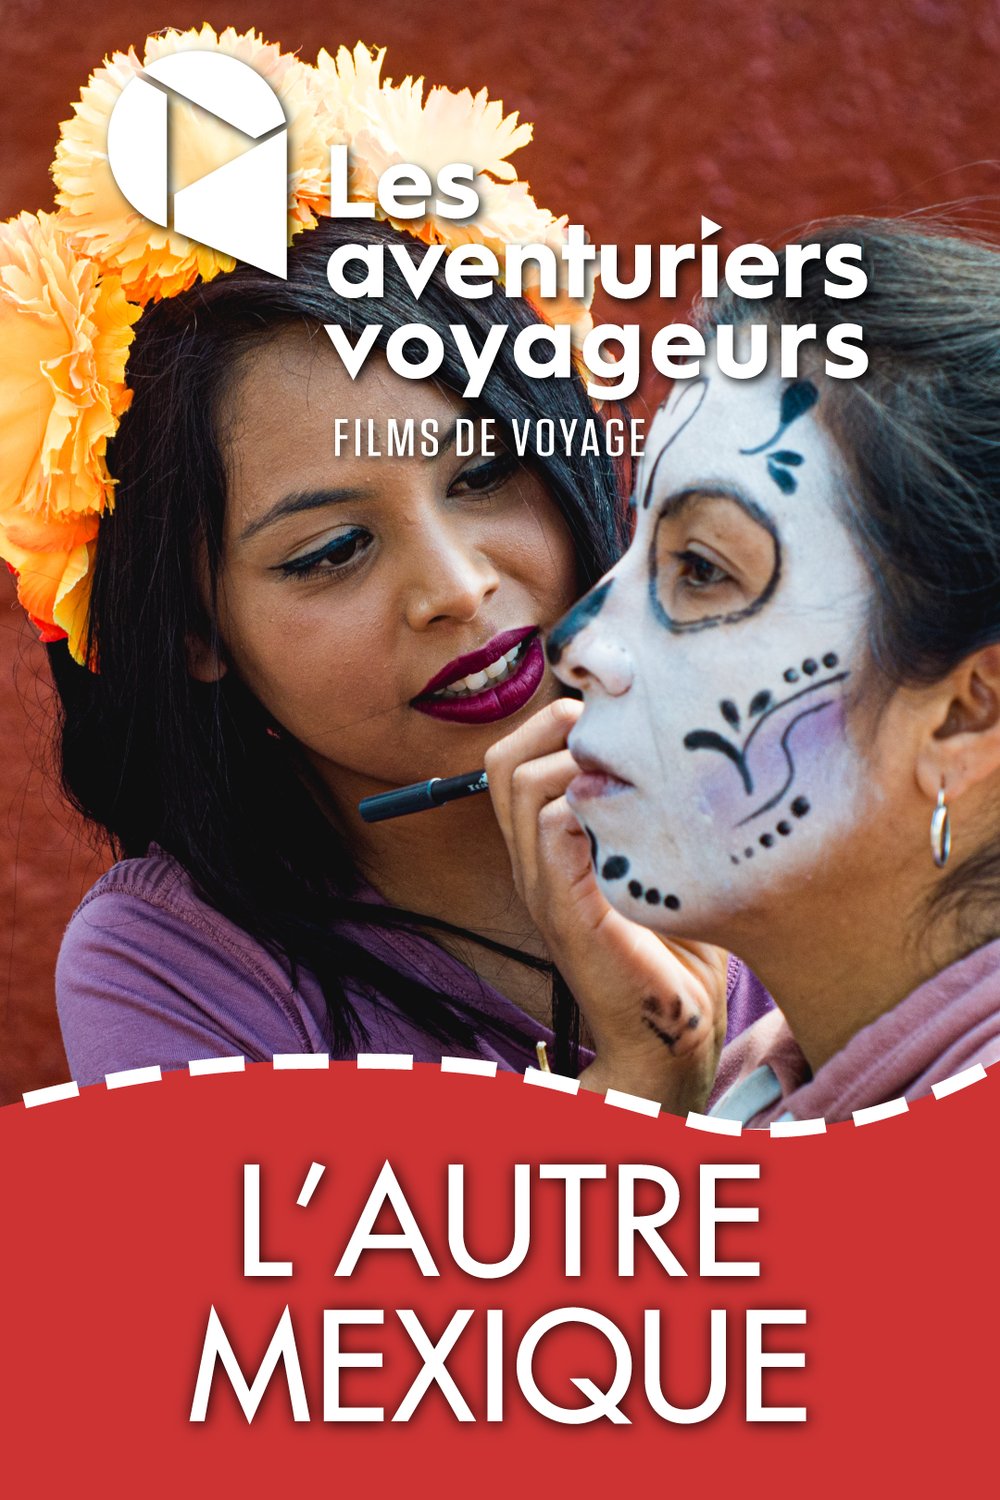 Poster of the movie Les aventuriers voyageurs: L'autre Méxique